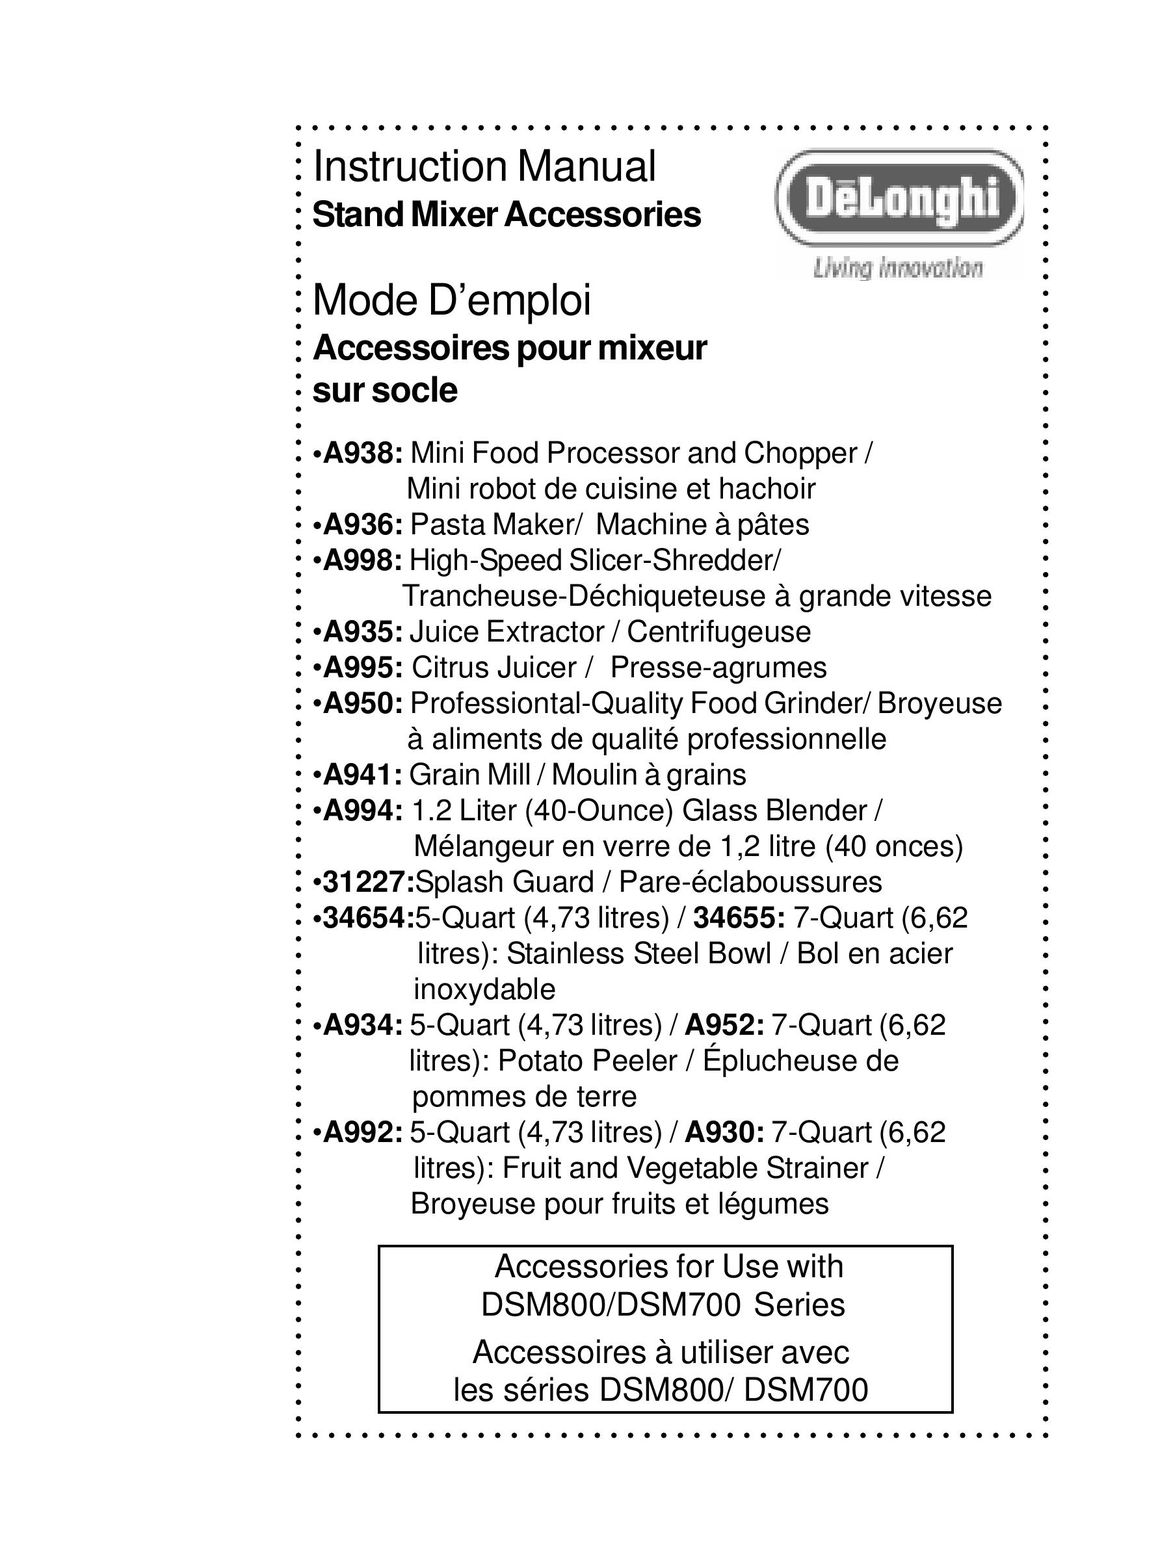 DeLonghi DSM700 Mixer User Manual